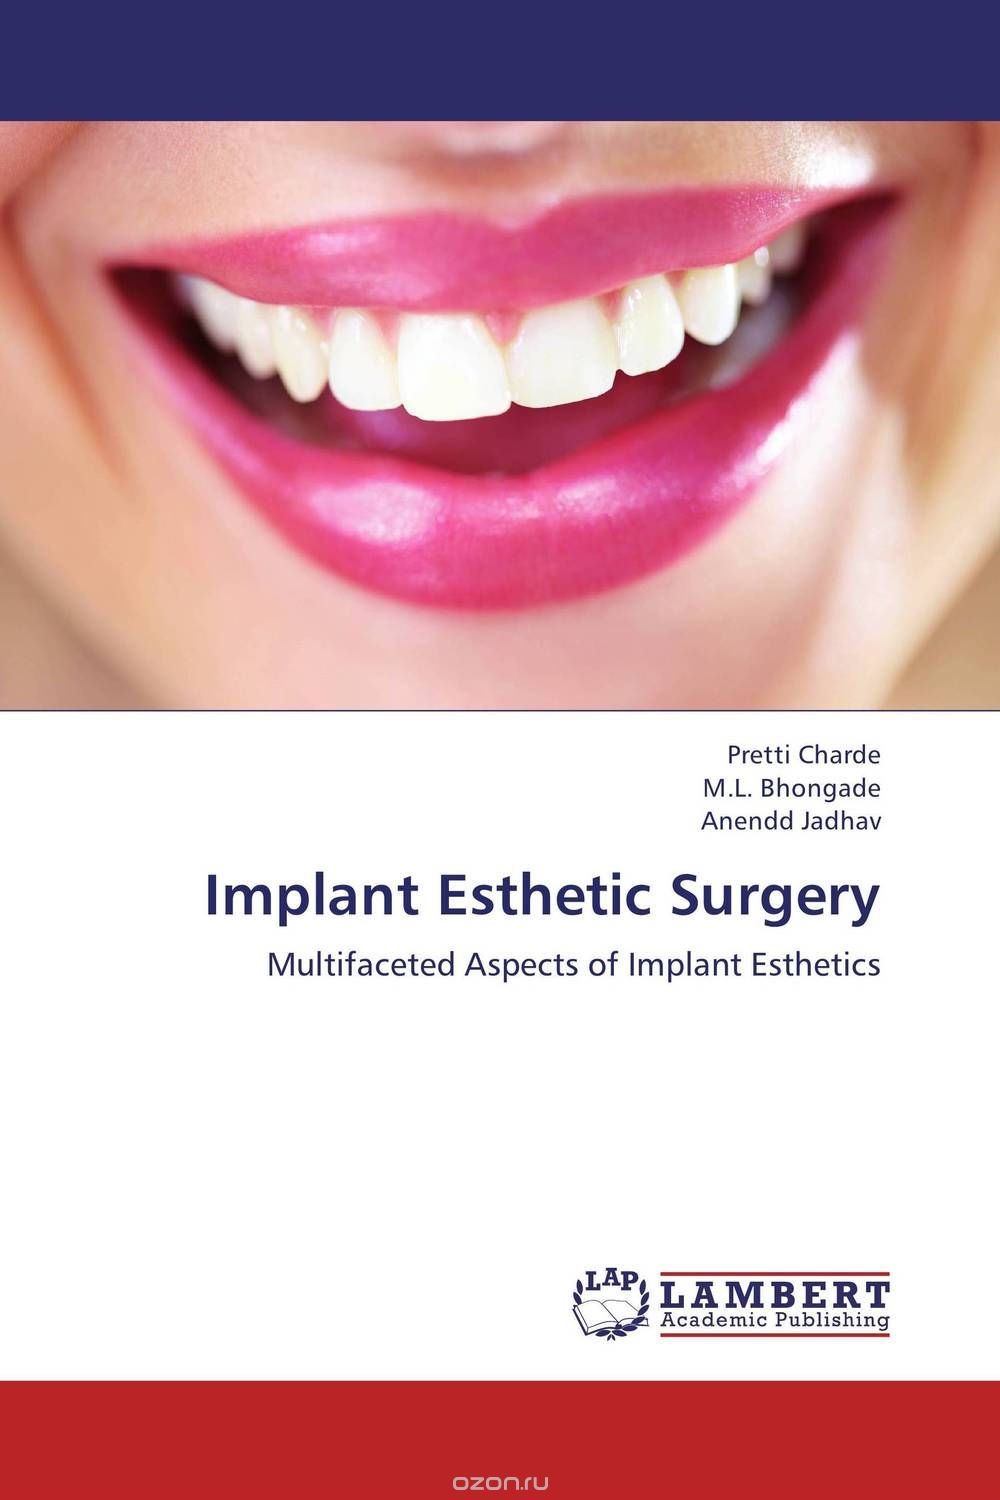 Скачать книгу "Implant Esthetic Surgery"